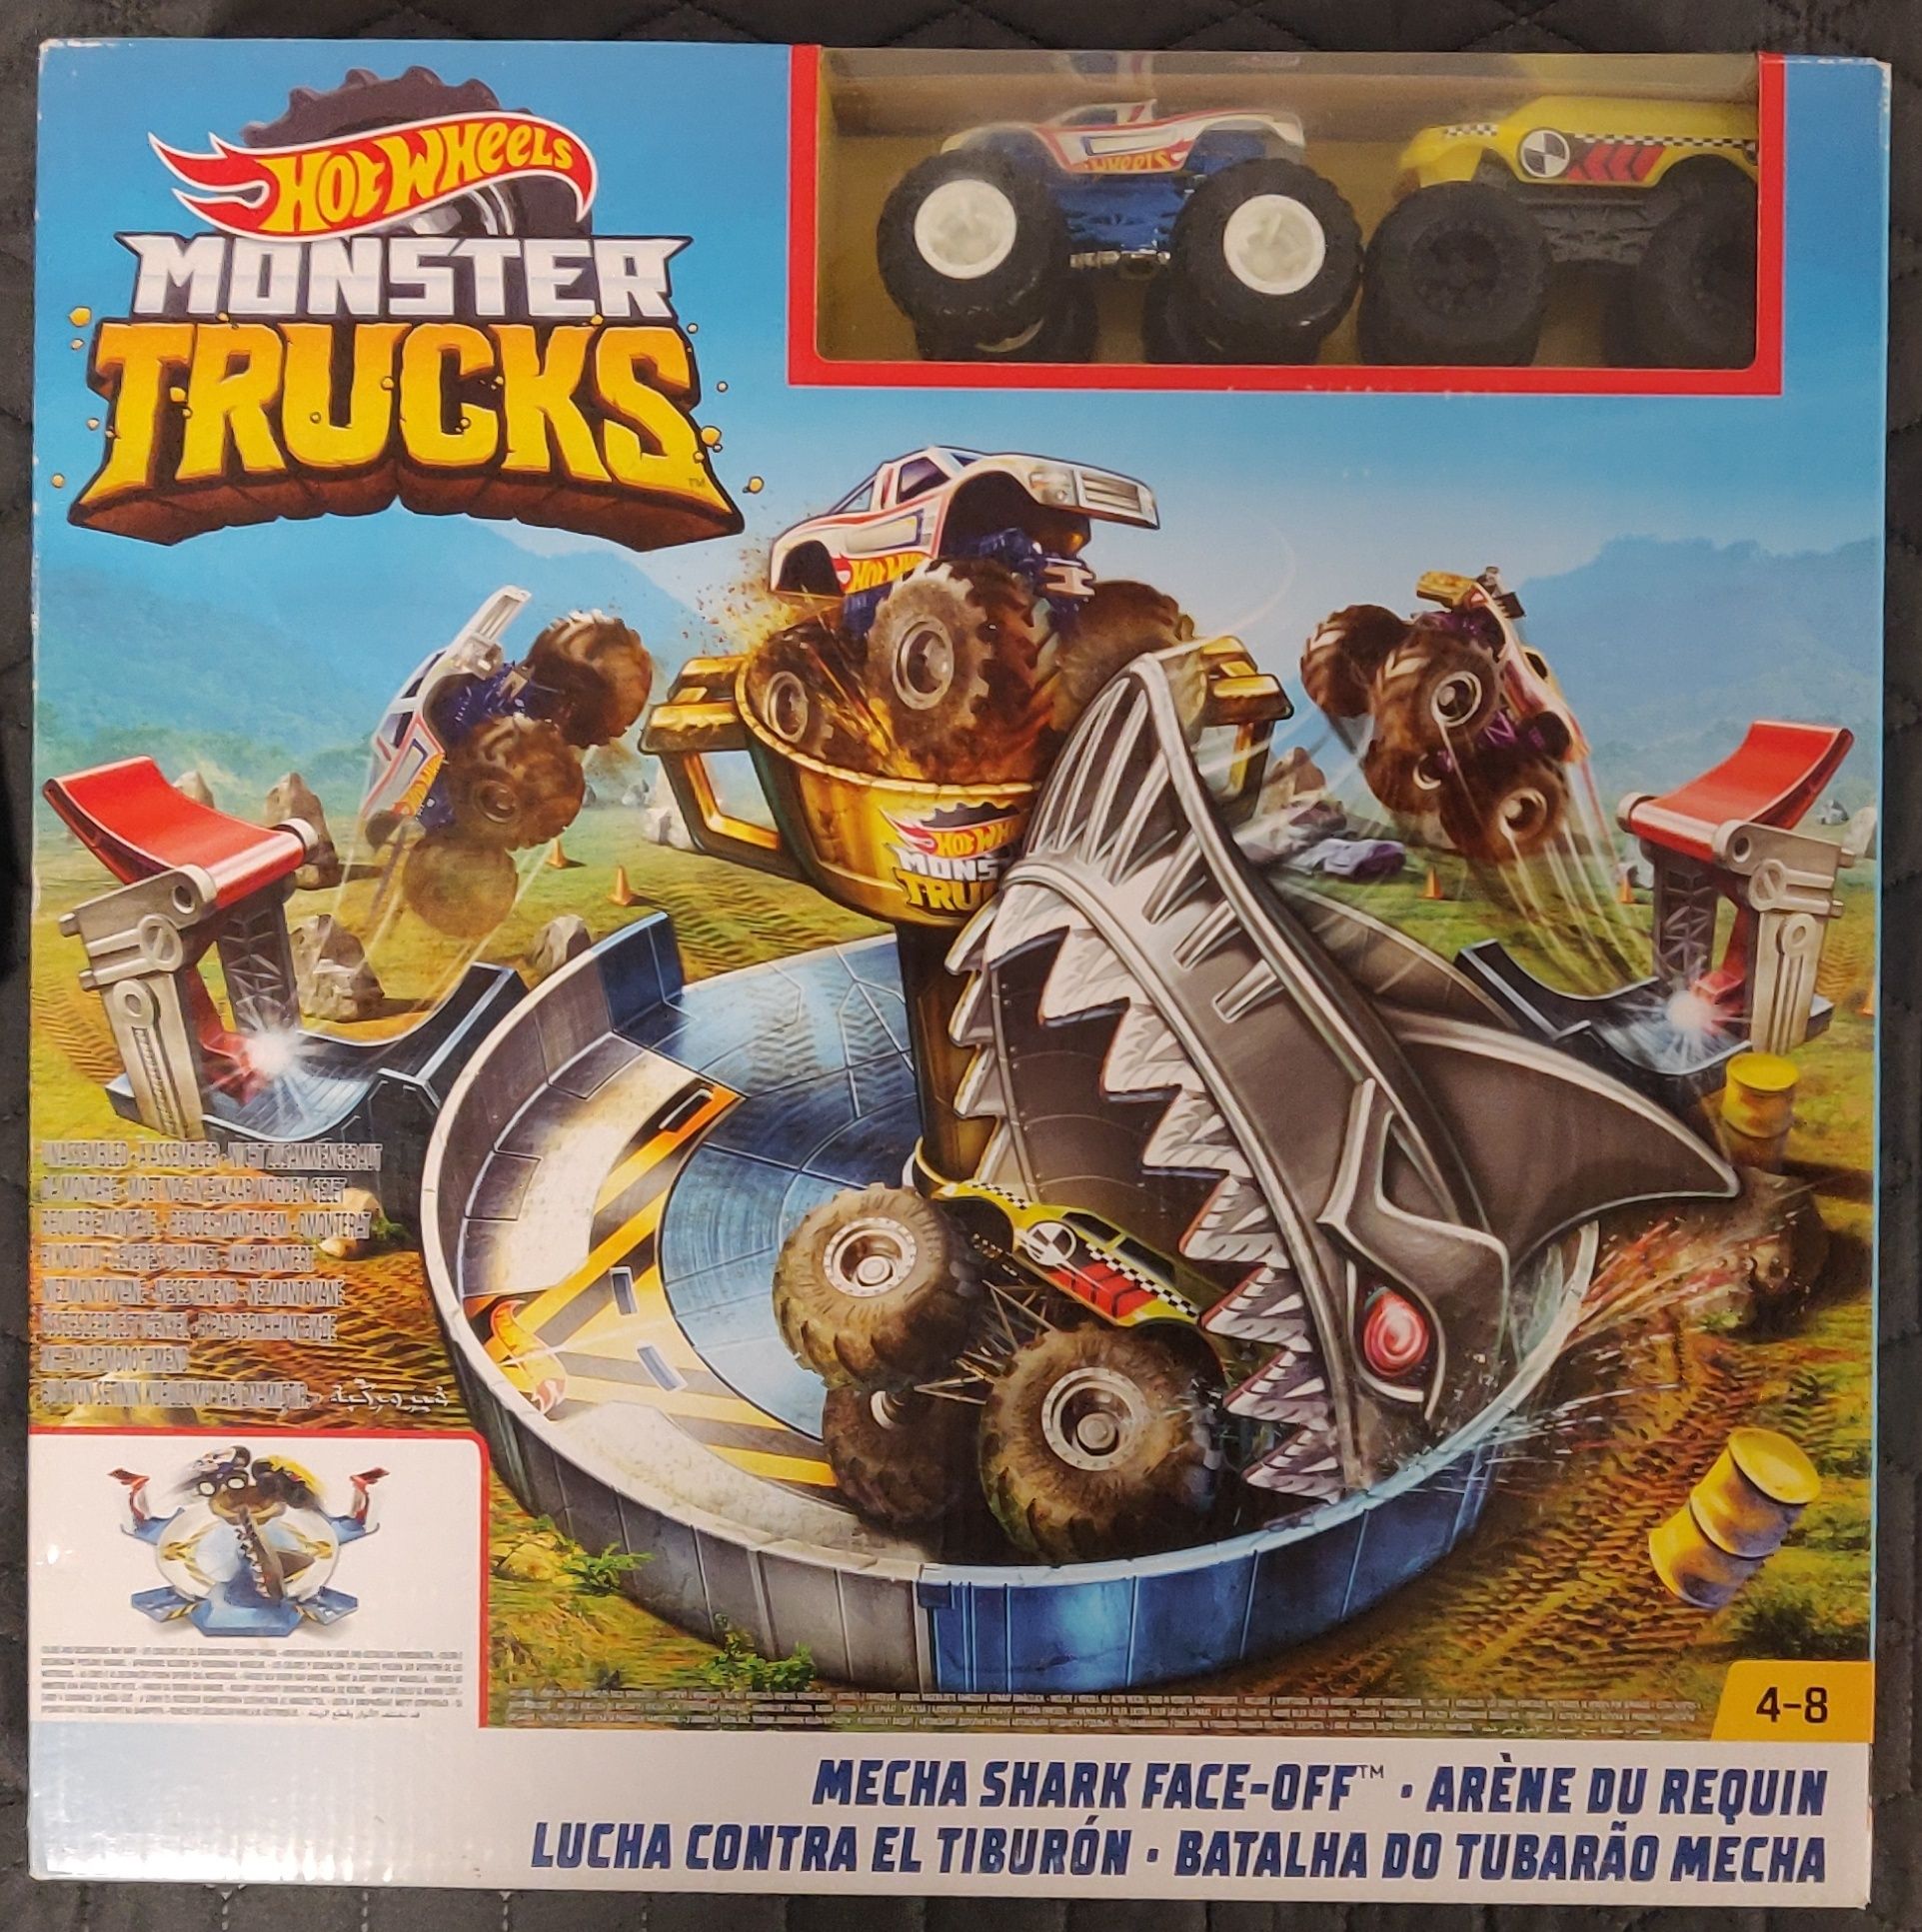 Vand set de joaca Hot Wheels - Monster Trucks Mecha Shark Face Off